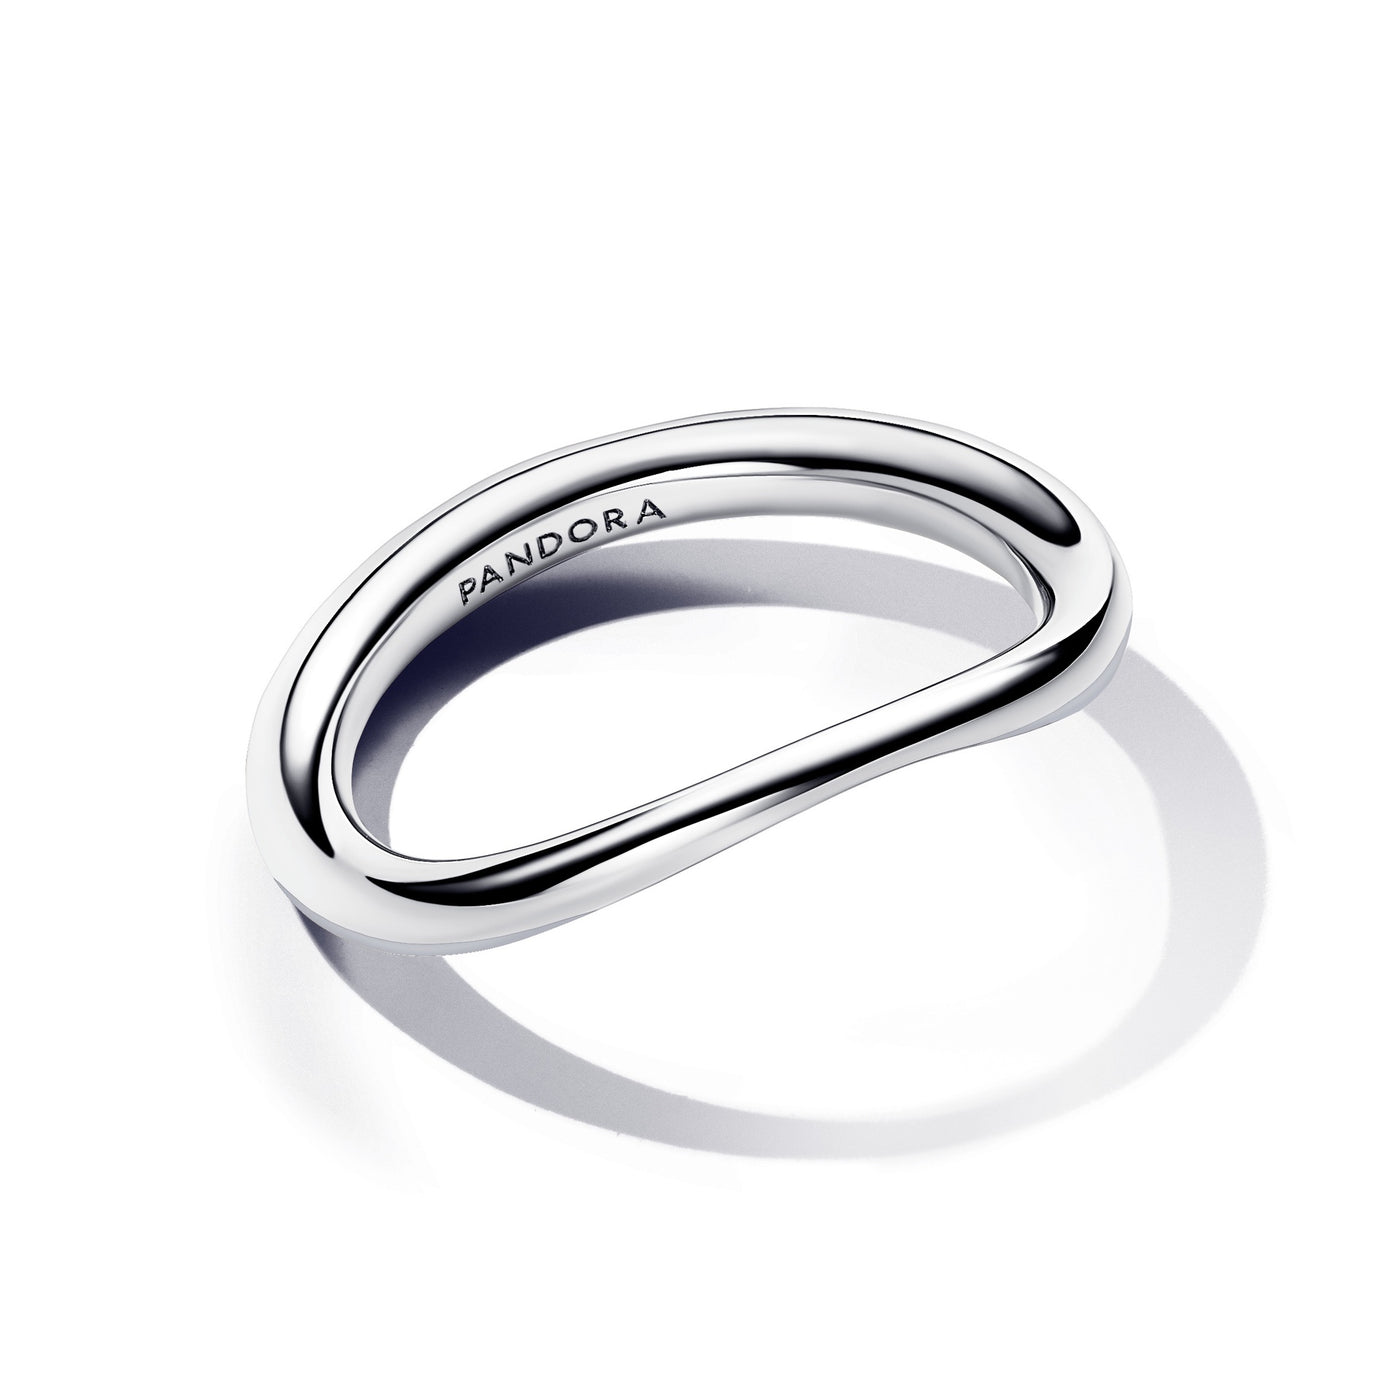 Pandora Organically Shaped Band Ring